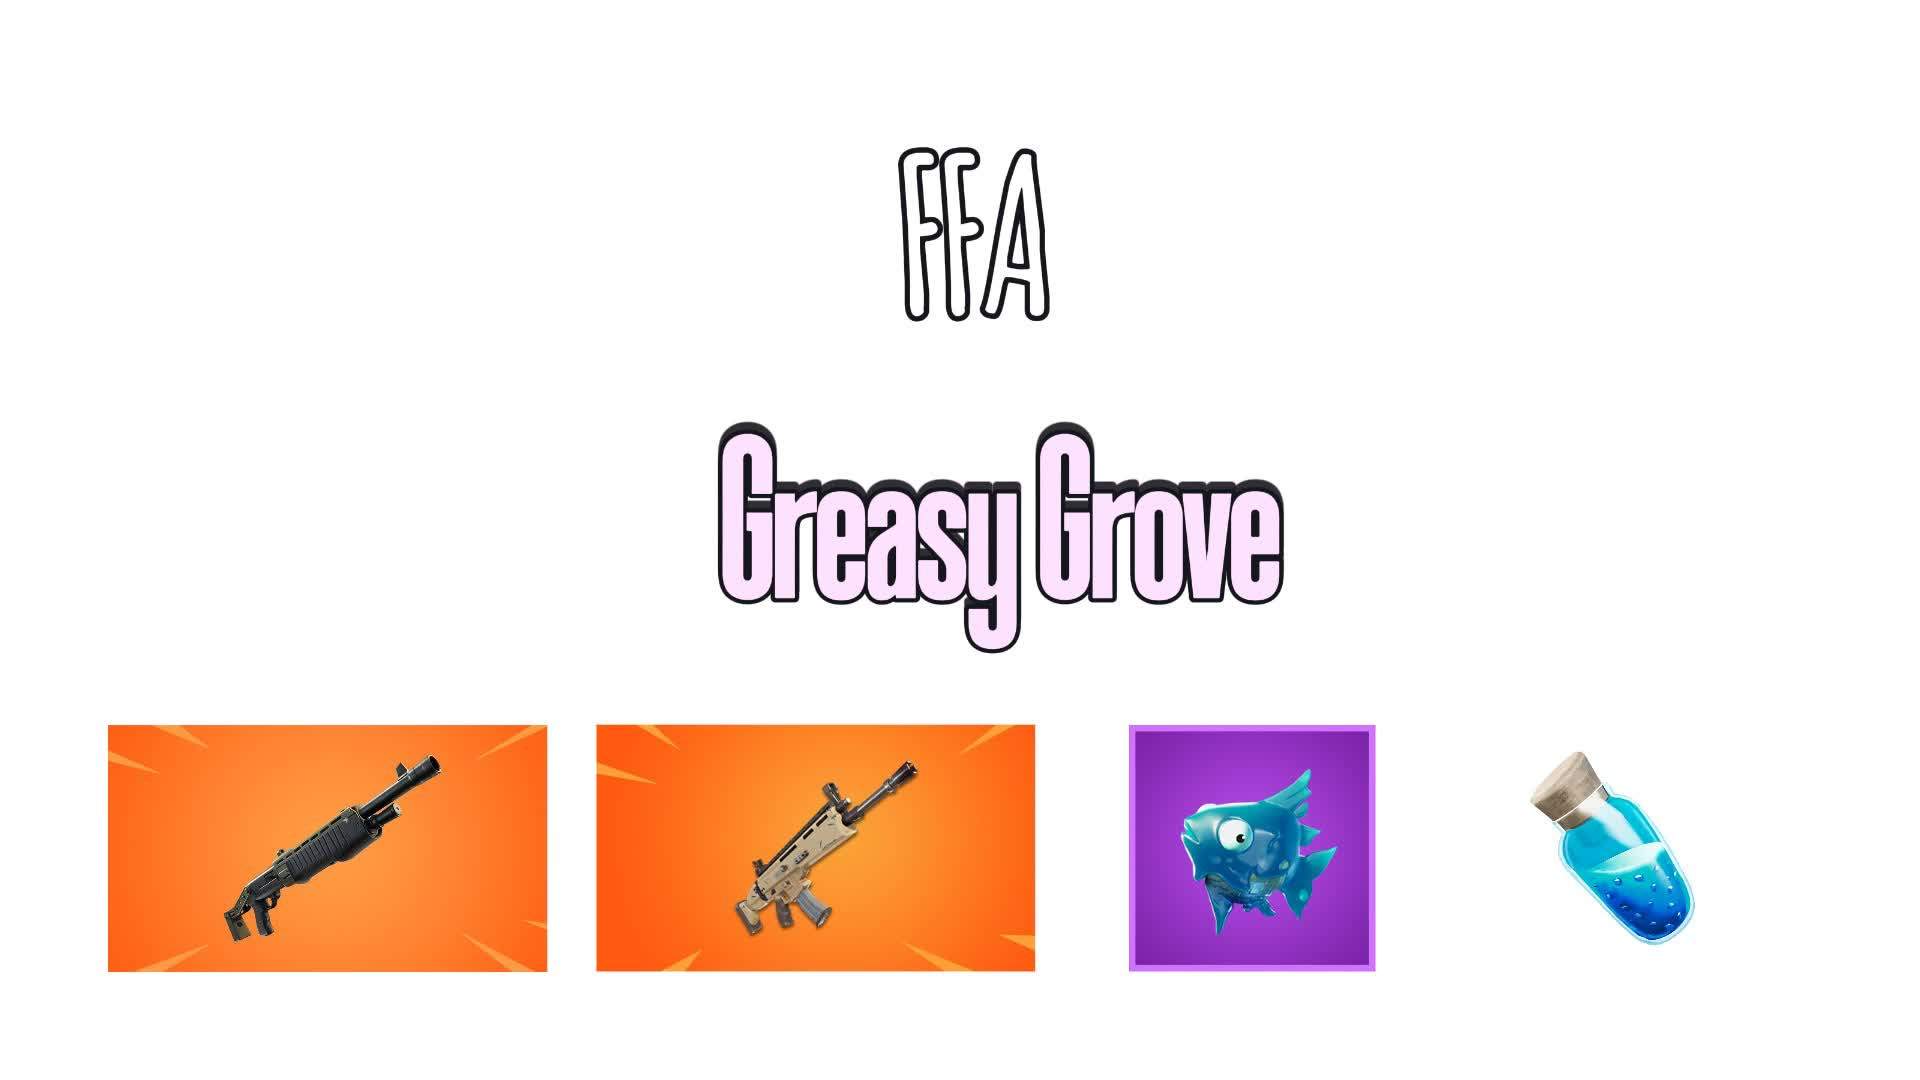 Greasy Grove FFA